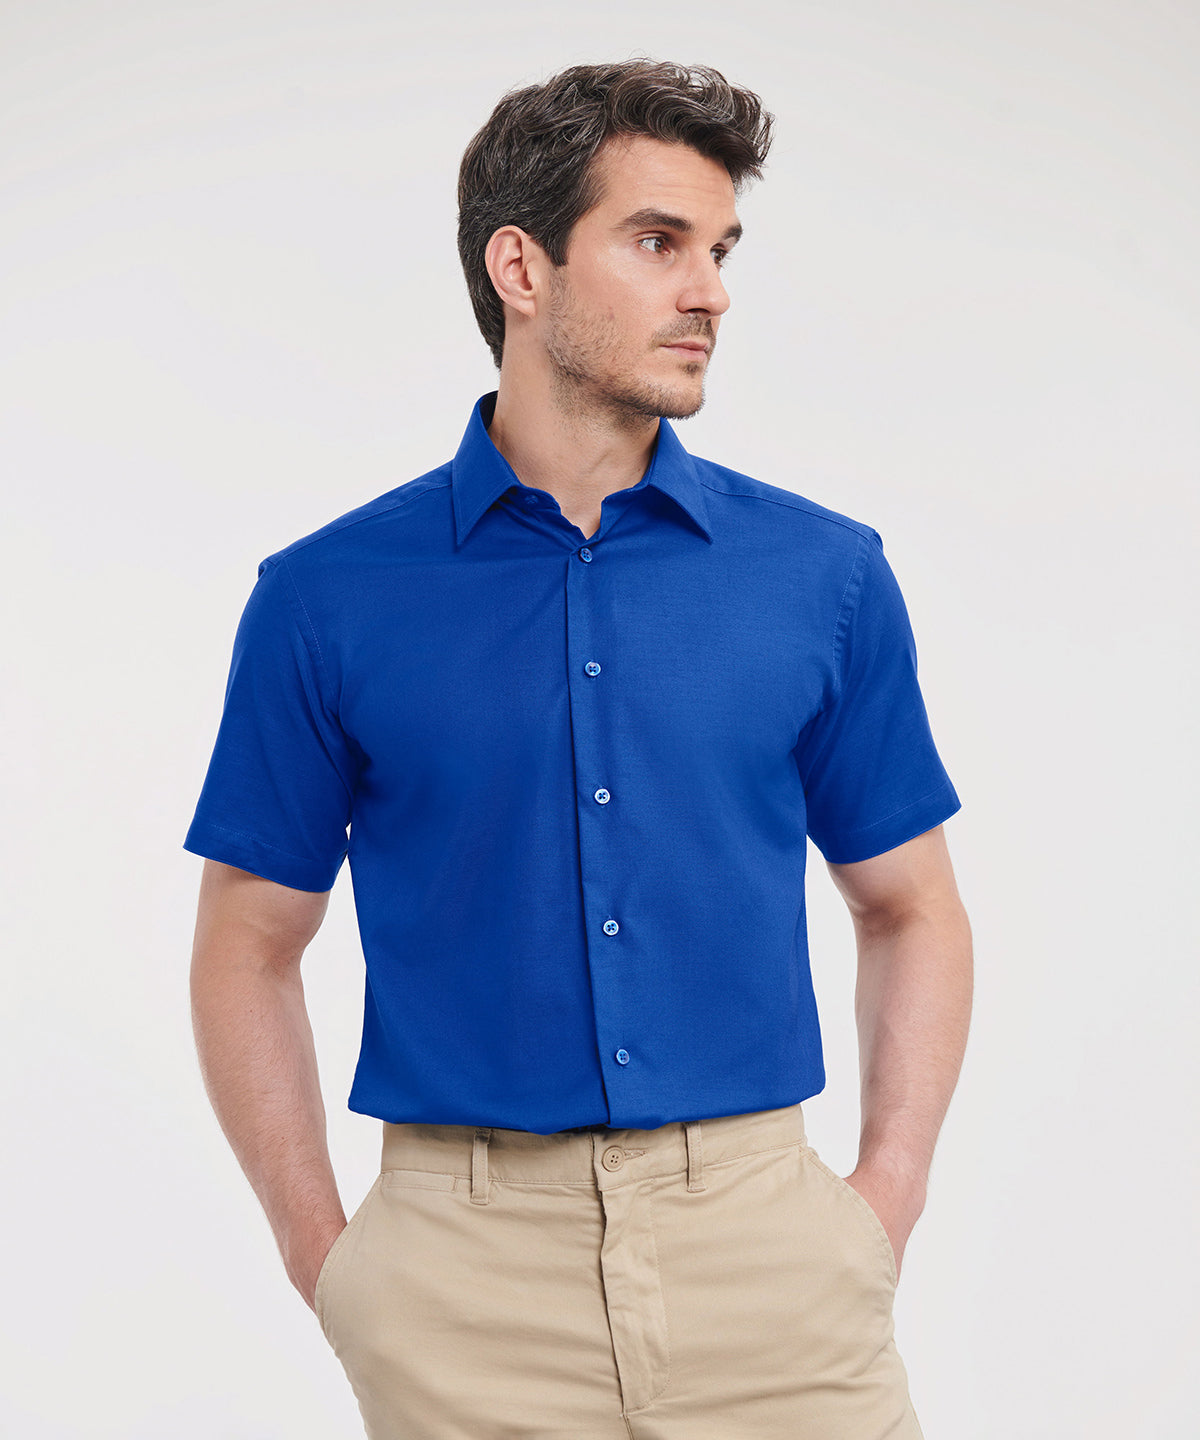 Bolir - Short Sleeve Easycare Tailored Oxford Shirt